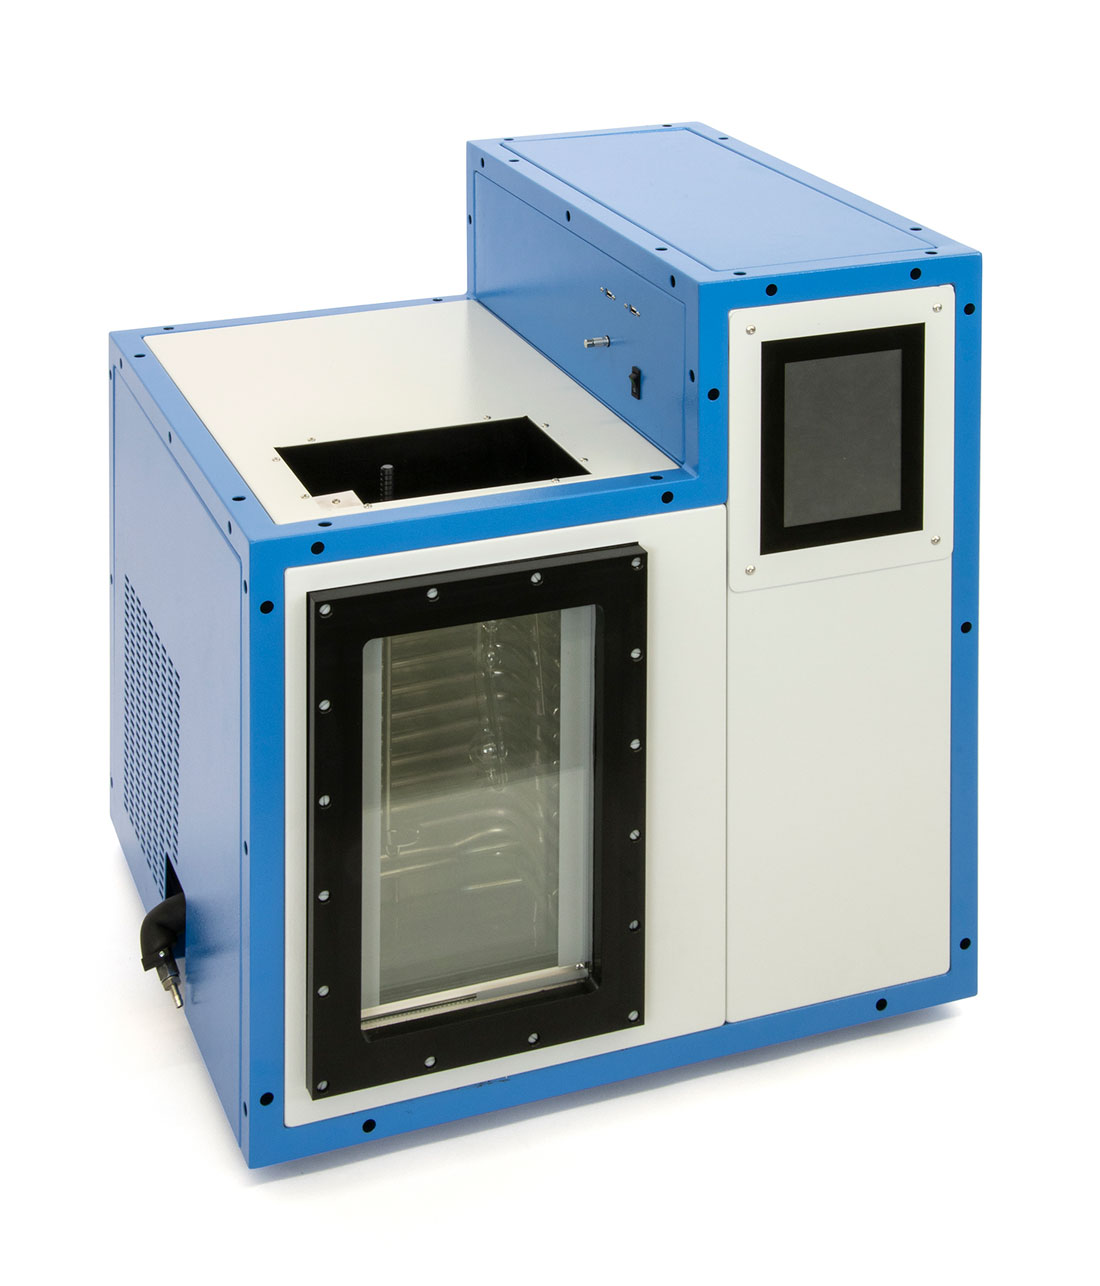 LT/VB-44000/M: Digital viscometer bath for low temperatures